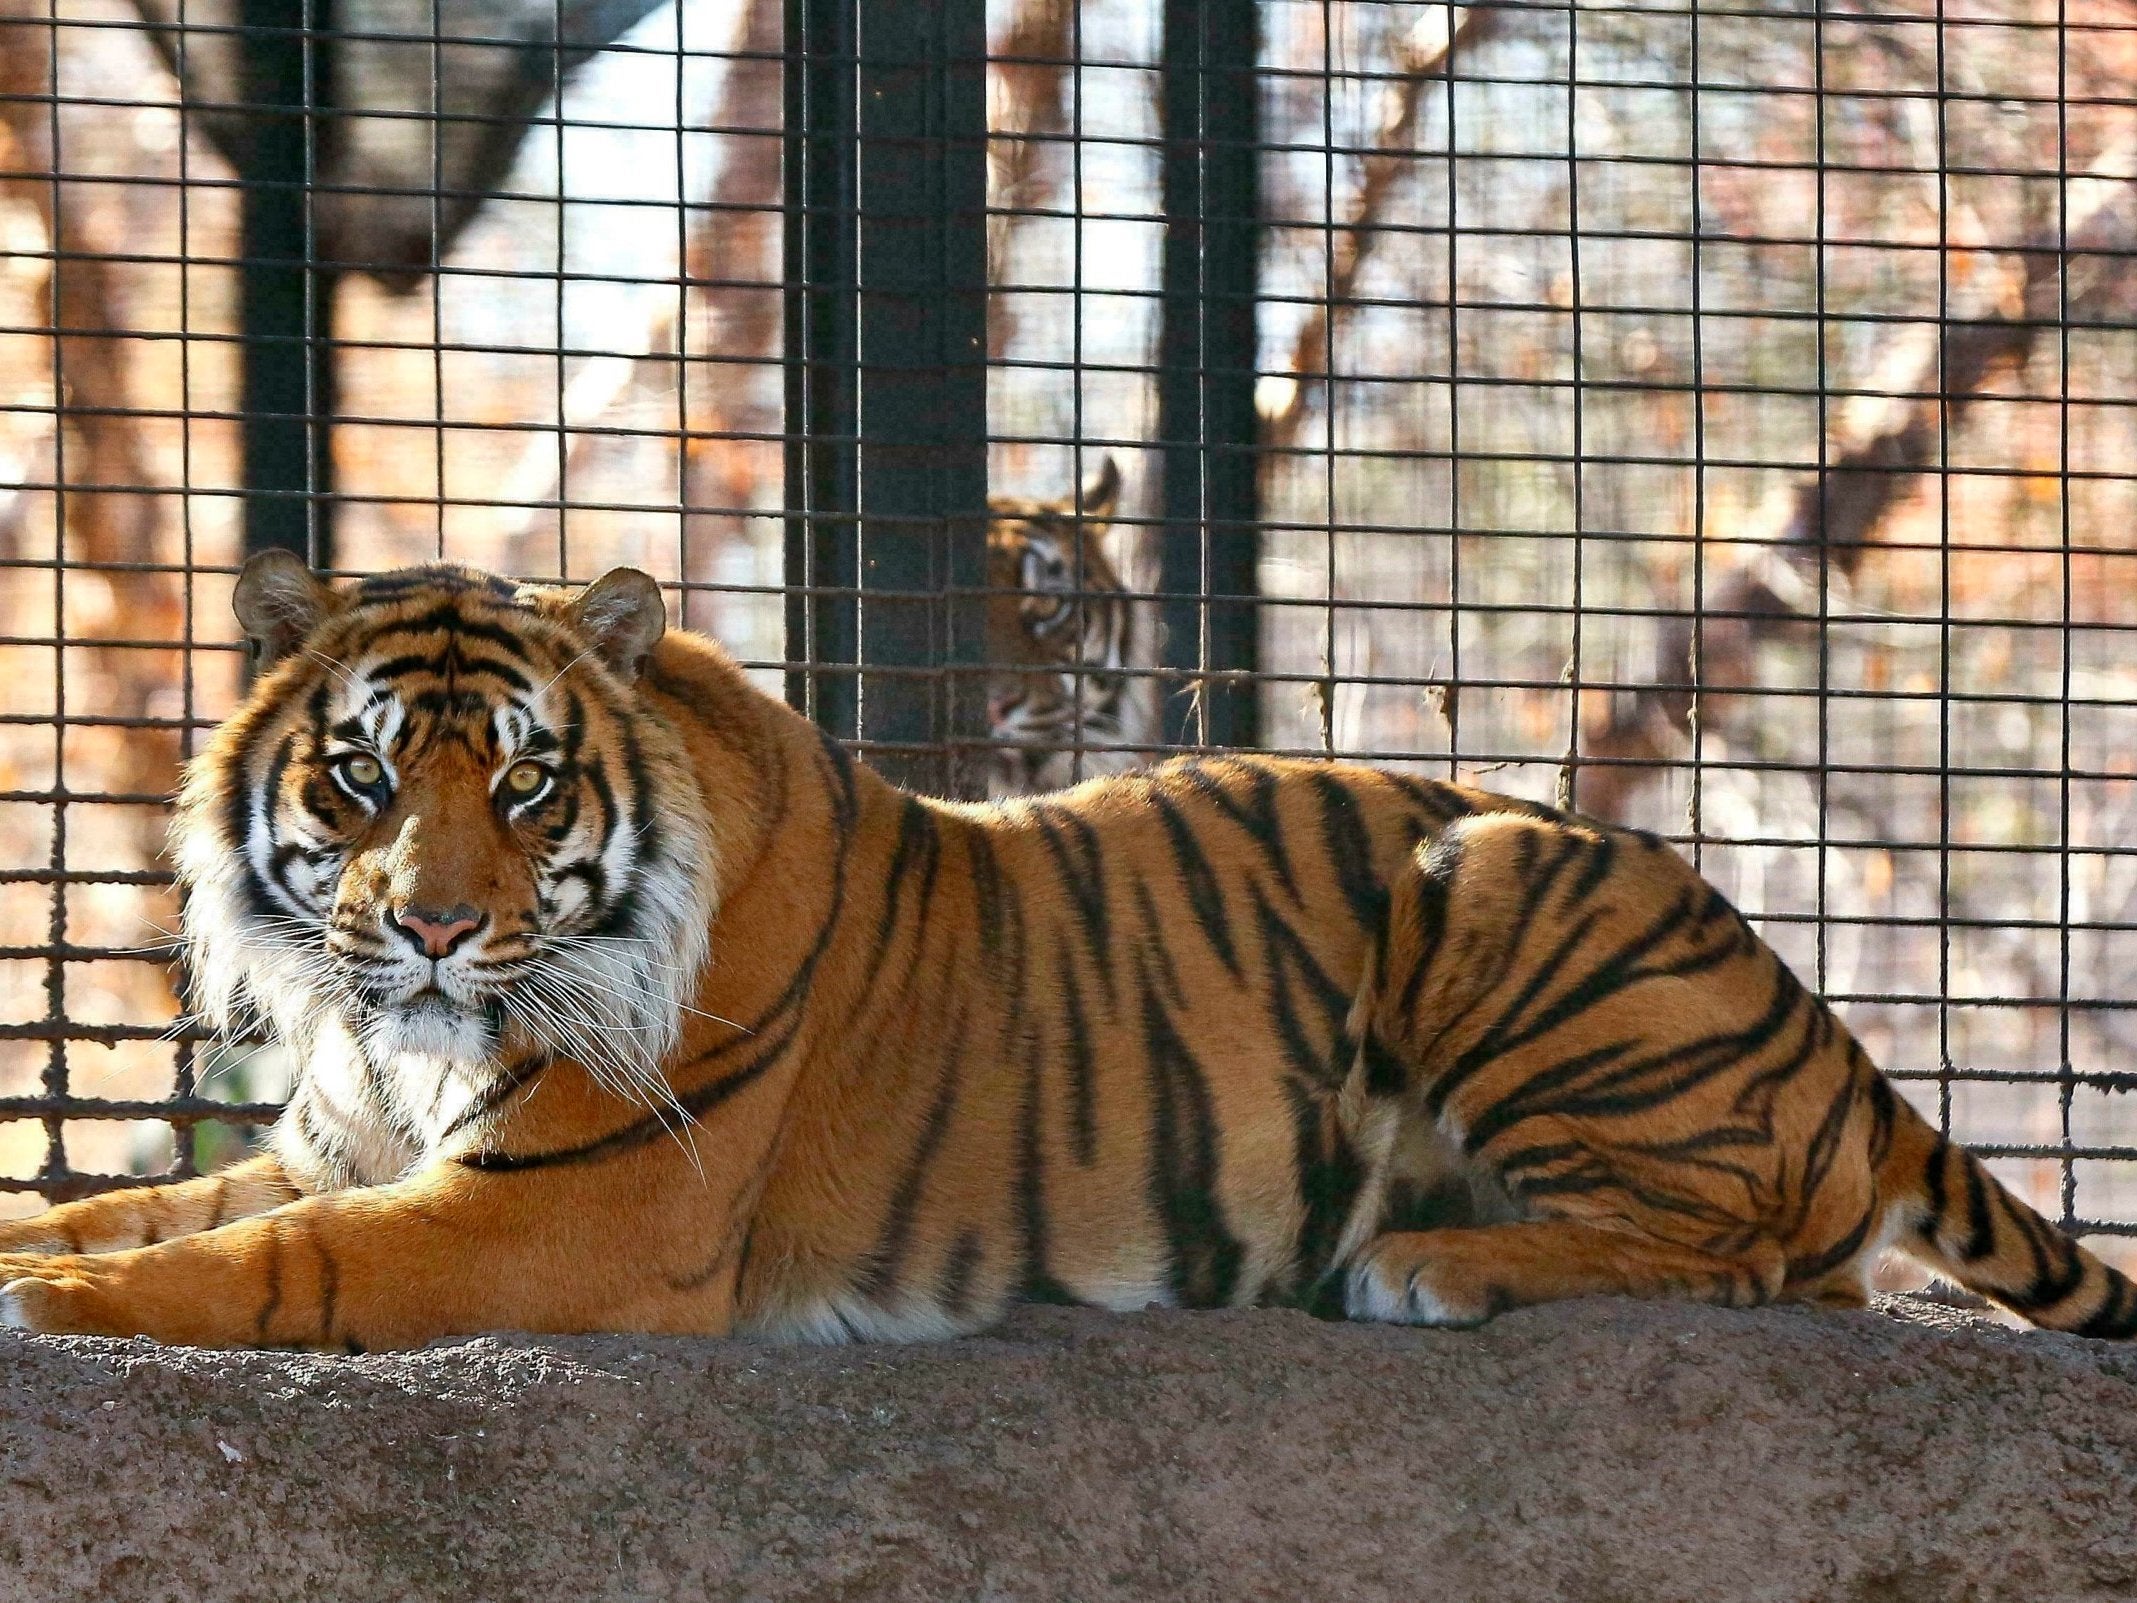 Sanjiv, a Sumatran tiger at the Topeka Zoo in Topeka, Kansas. City officials say Sanjiv attacked a zookeeper early Saturday 20 April 2019, at the zoo.